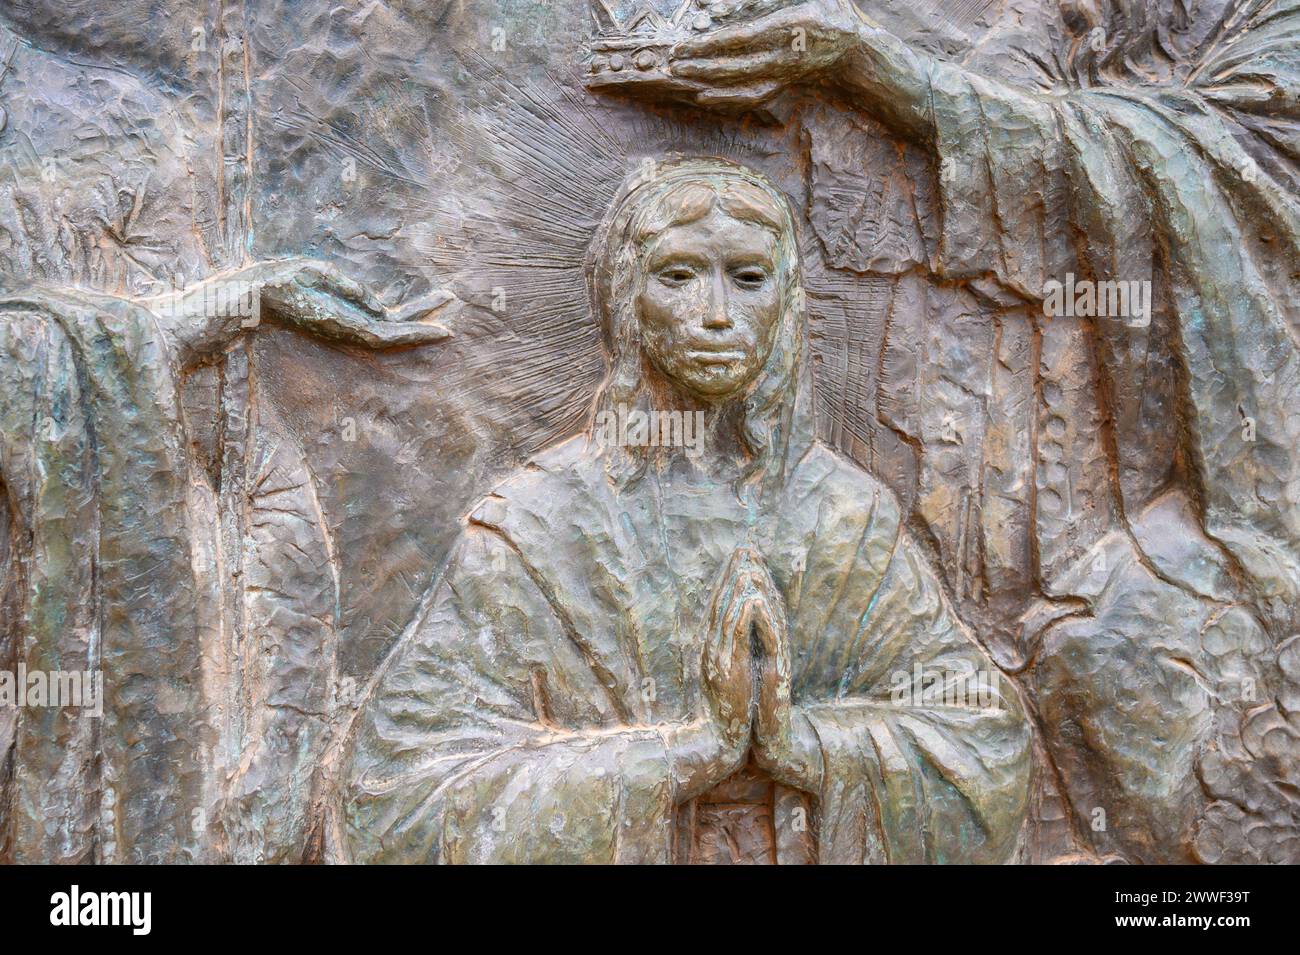 Le couronnement de Marie - Cinquième mystère glorieux du Rosaire. Sculpture en relief sur le mont Podbrdo (la colline des apparitions) à Medjugorje. Banque D'Images